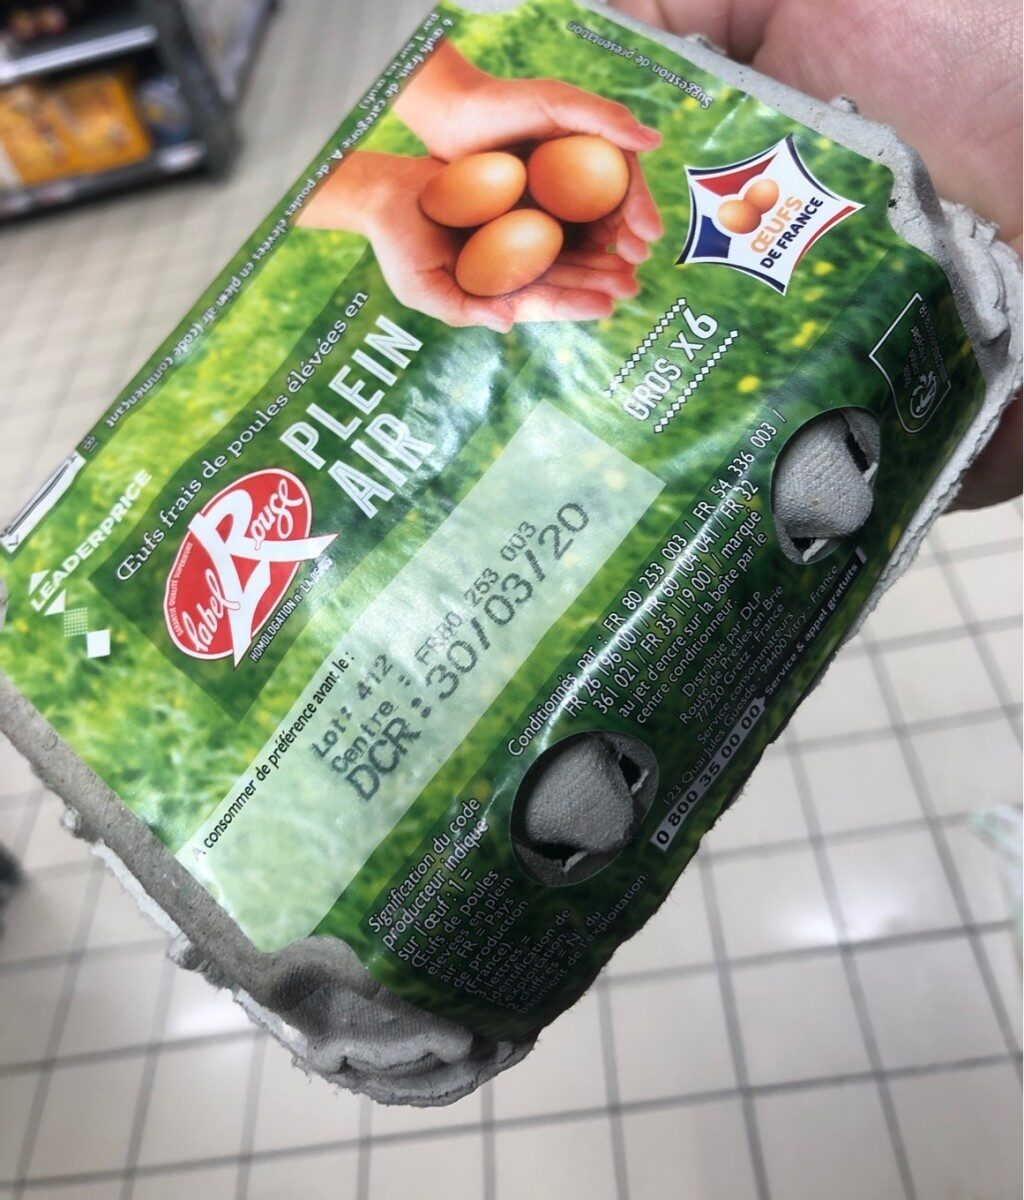 œufs frais plein air - Product - fr